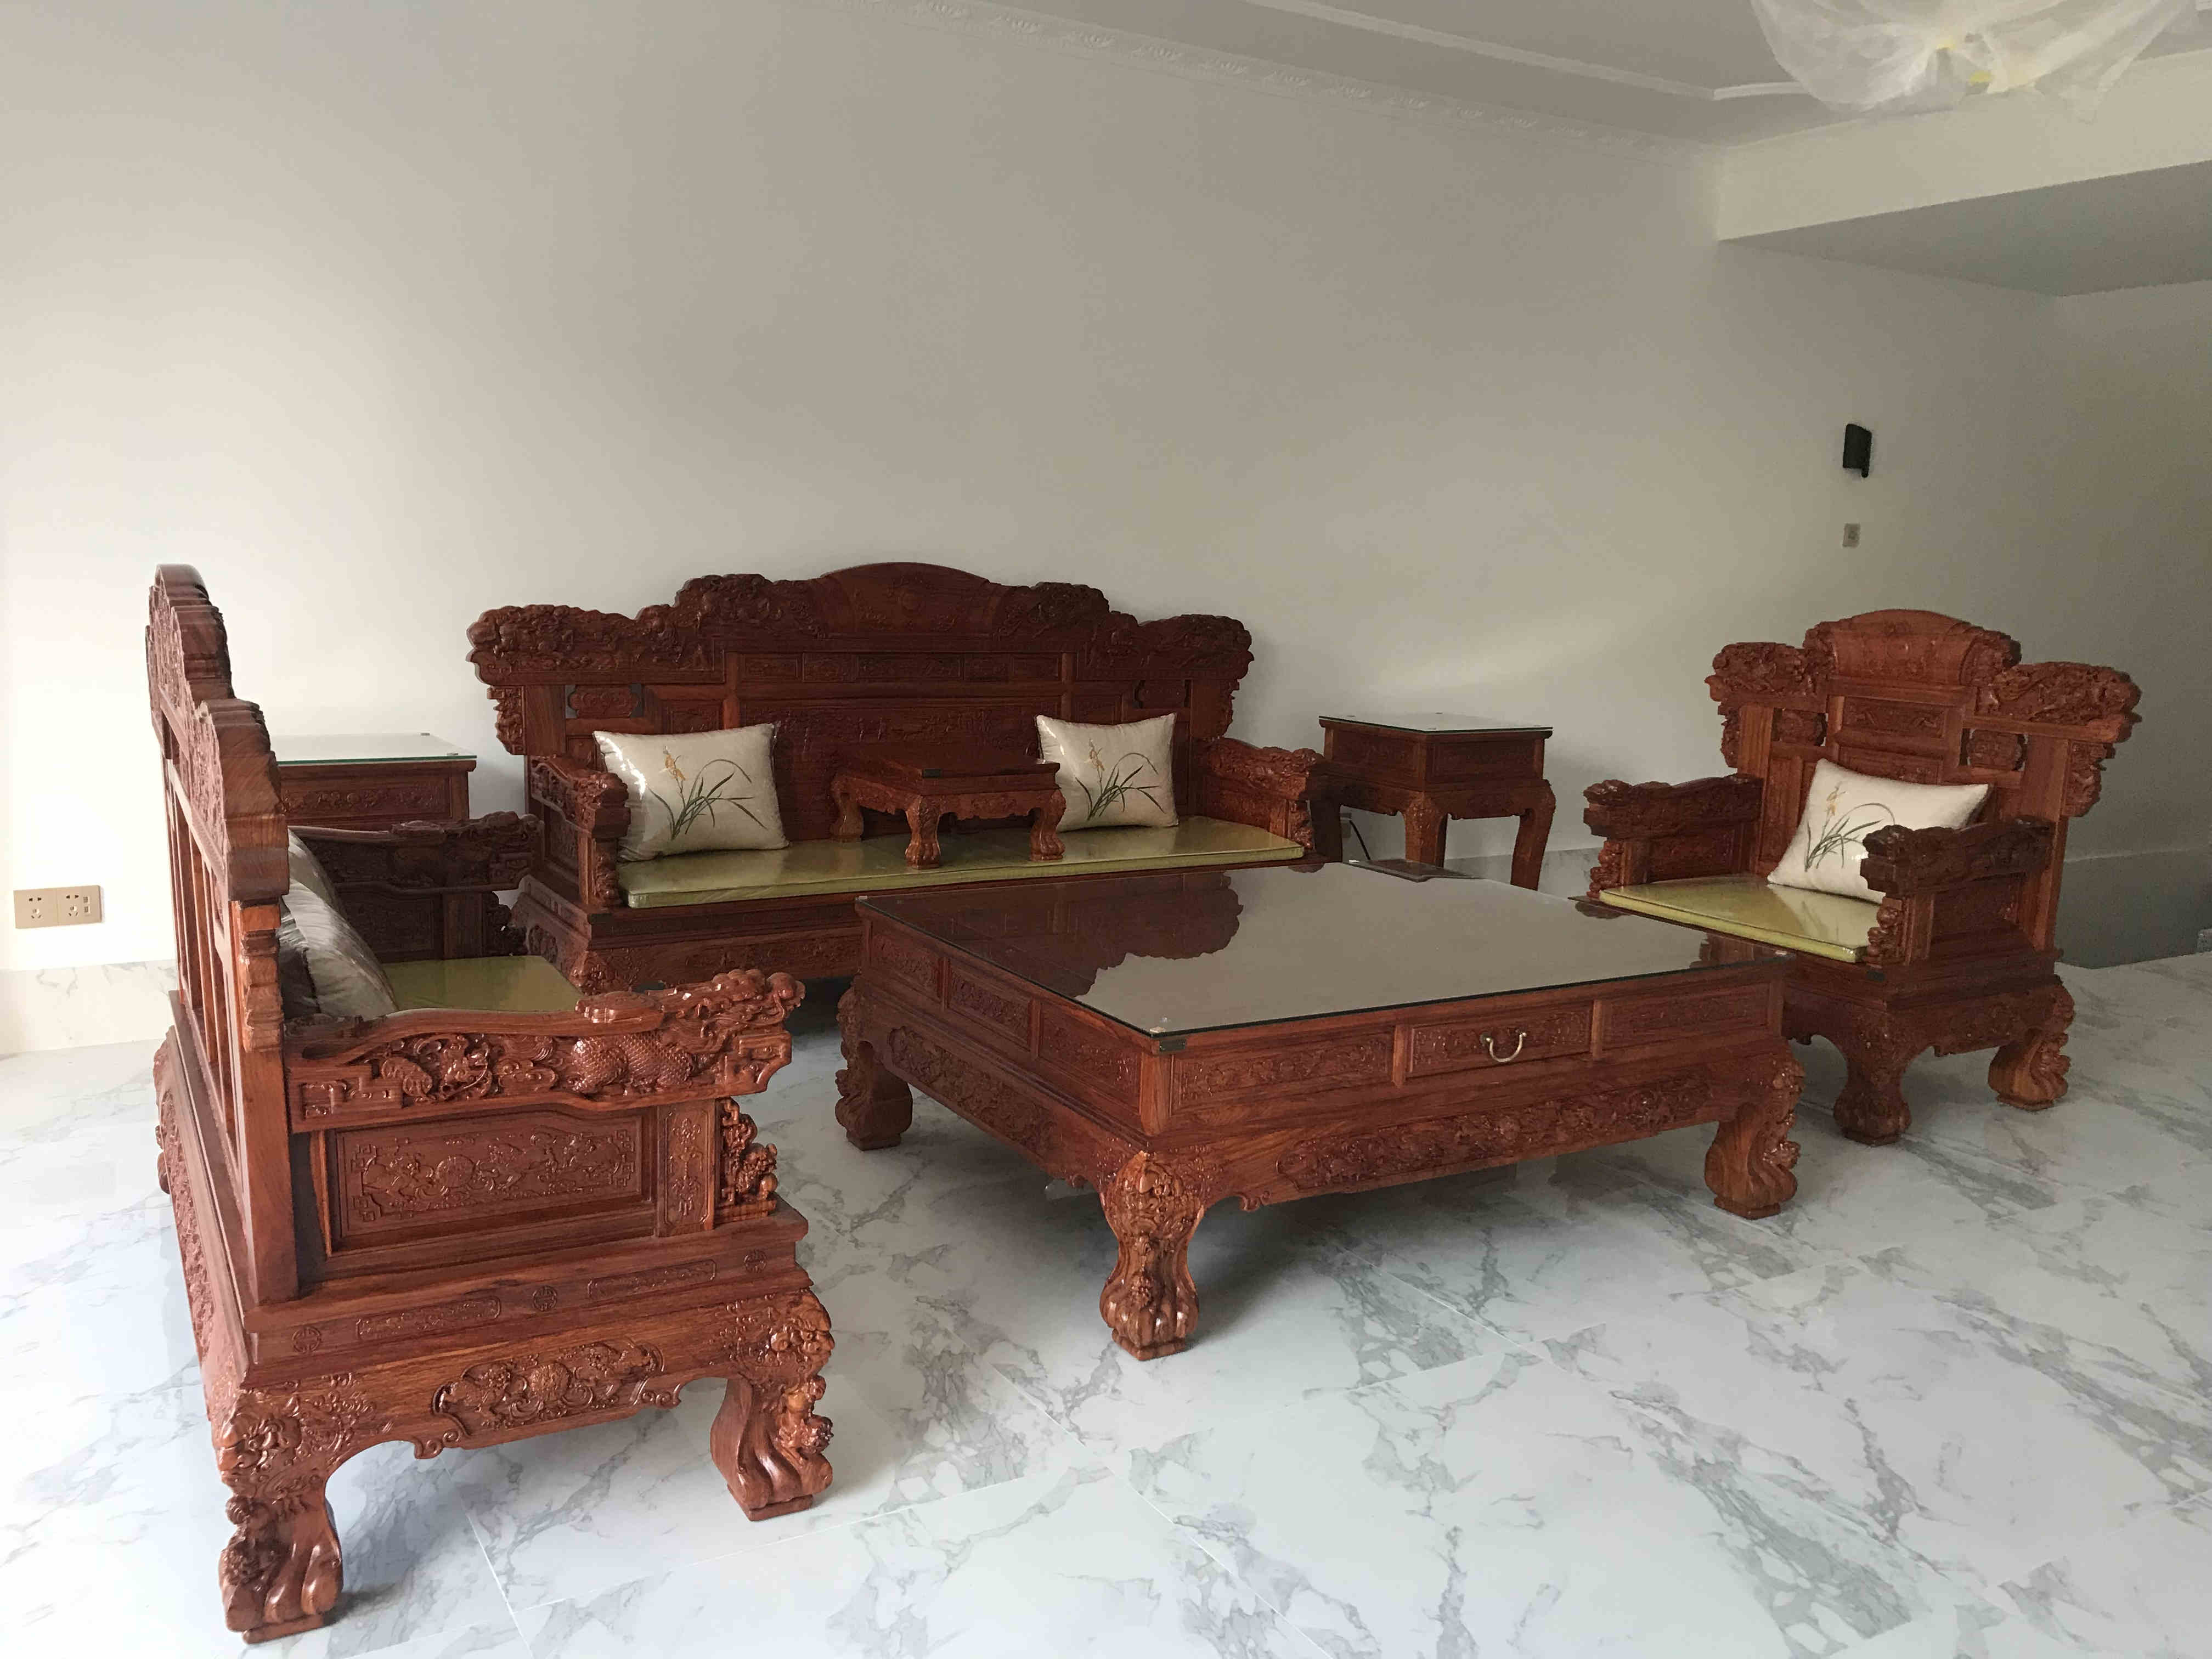 广东惠州客户家中沙发已摆放好  祥蕴阁红木家具